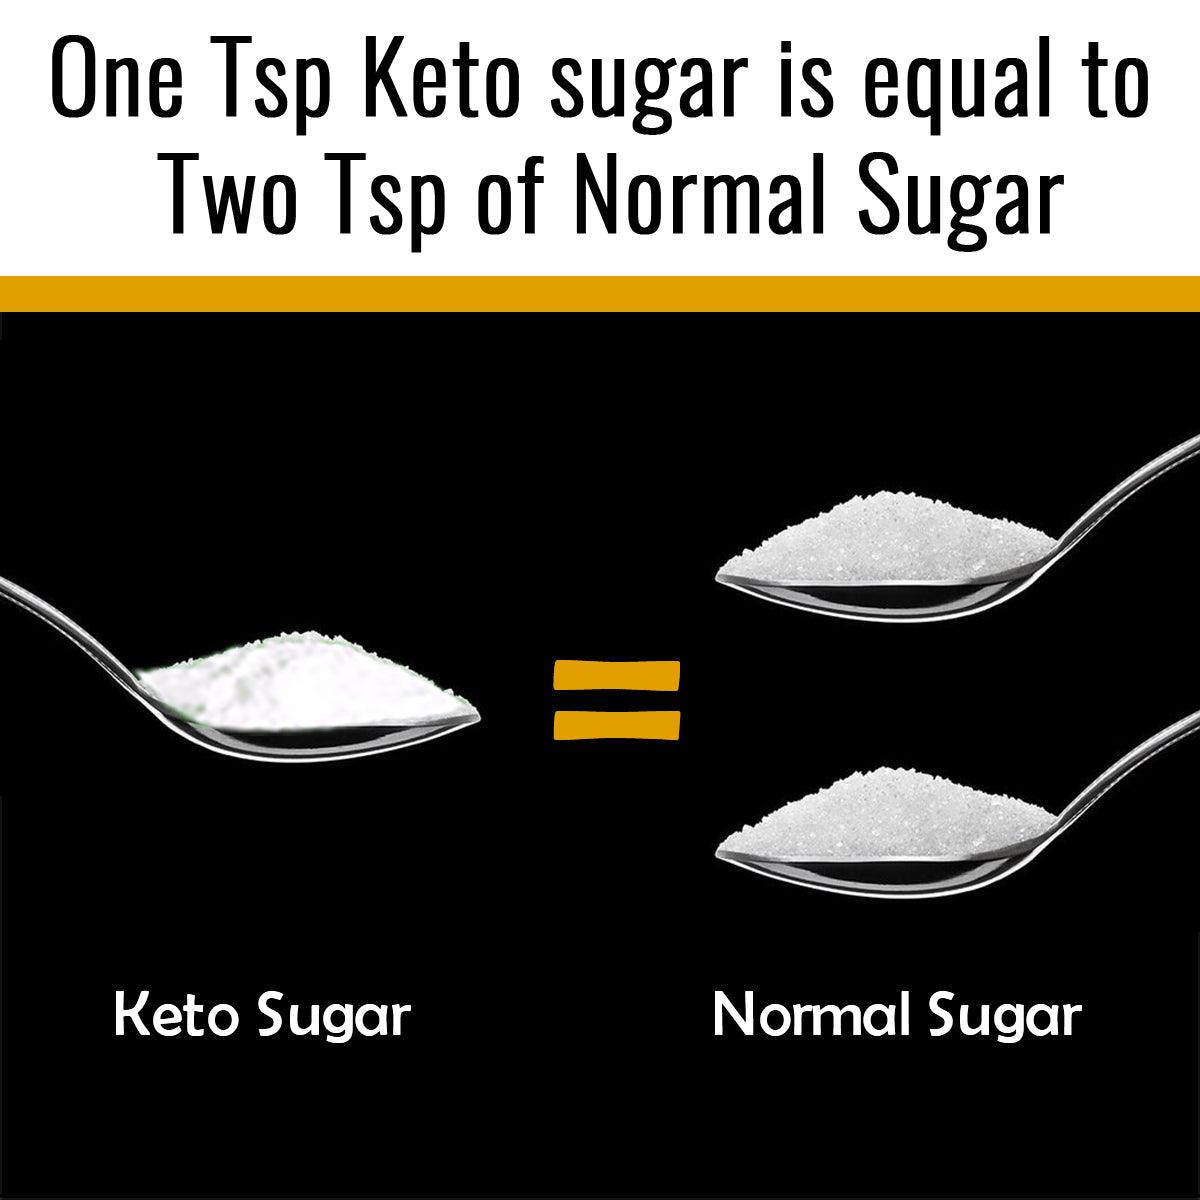 NutroActive Keto Sugar Zero Carb Sweetener 100% Sugar Free- 250gm - Diabexy